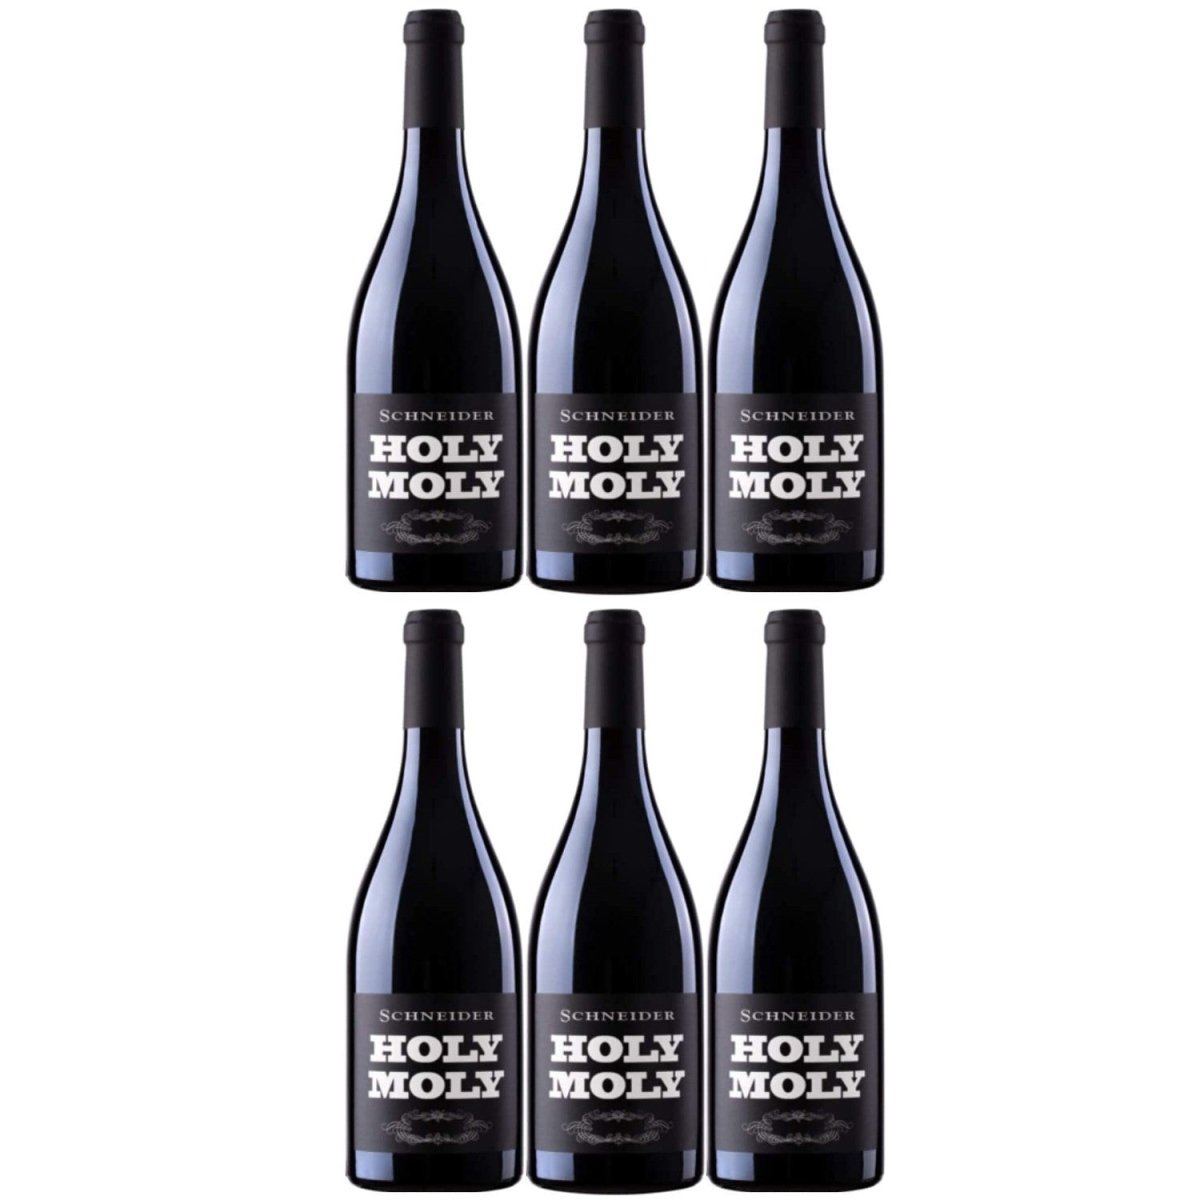 Markus Schneider Holy Molly Syrah Rotwein deutscher Wein trocken Pfalz (6 x 0.75l) - Versanel -